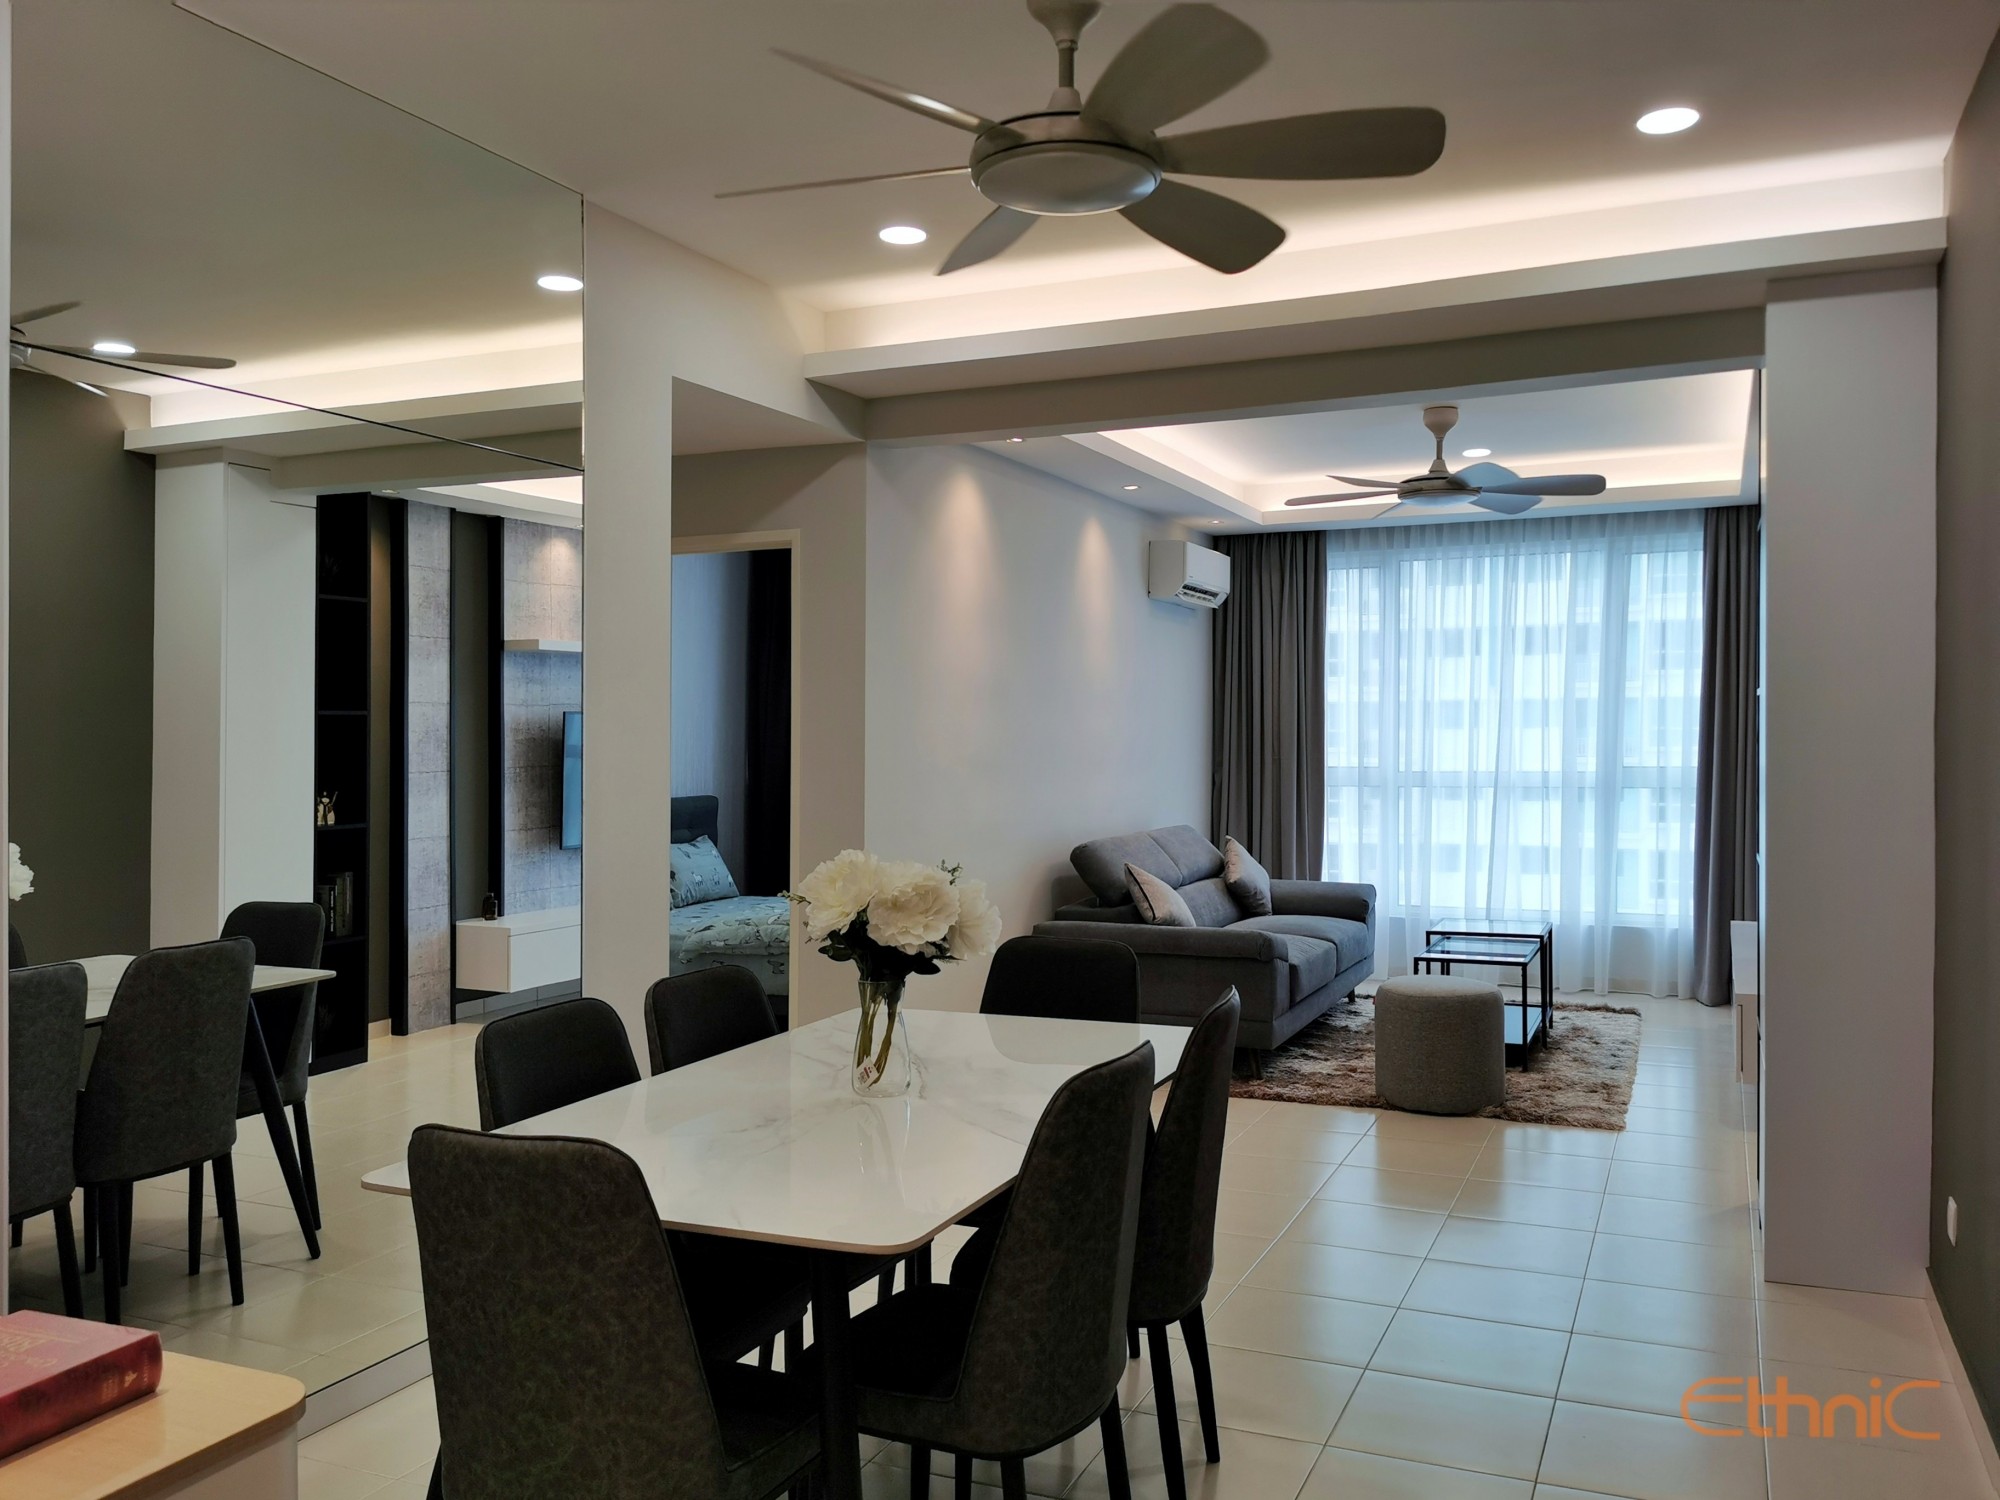 iSantorini Interior Design Penang Condominium